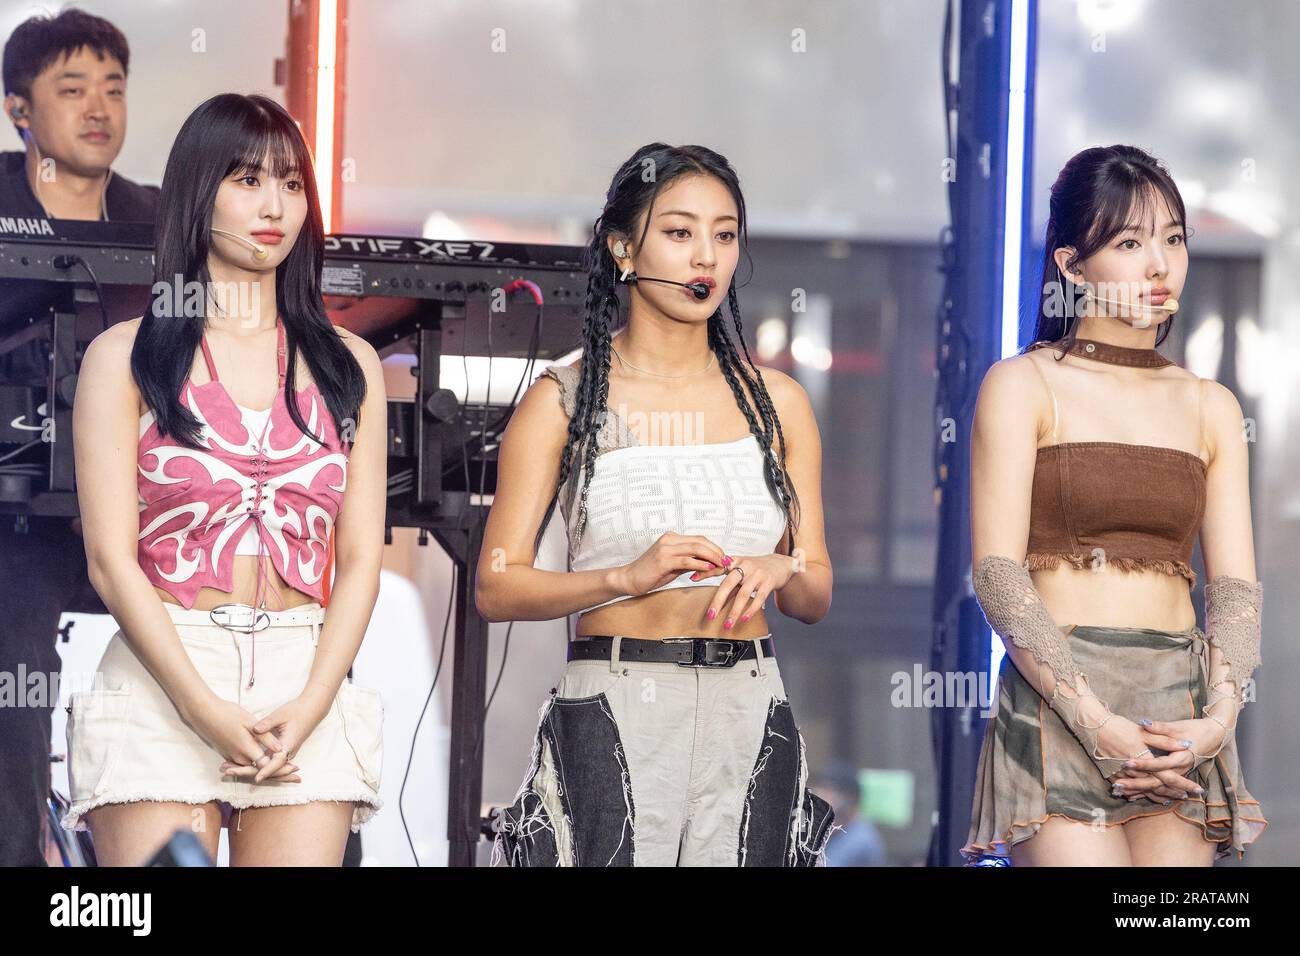 Membros Girl Group Sul Coreano Twice Chegam Tapete Vermelho Para —  Fotografia de Stock Editorial © ChinaImages #234200214